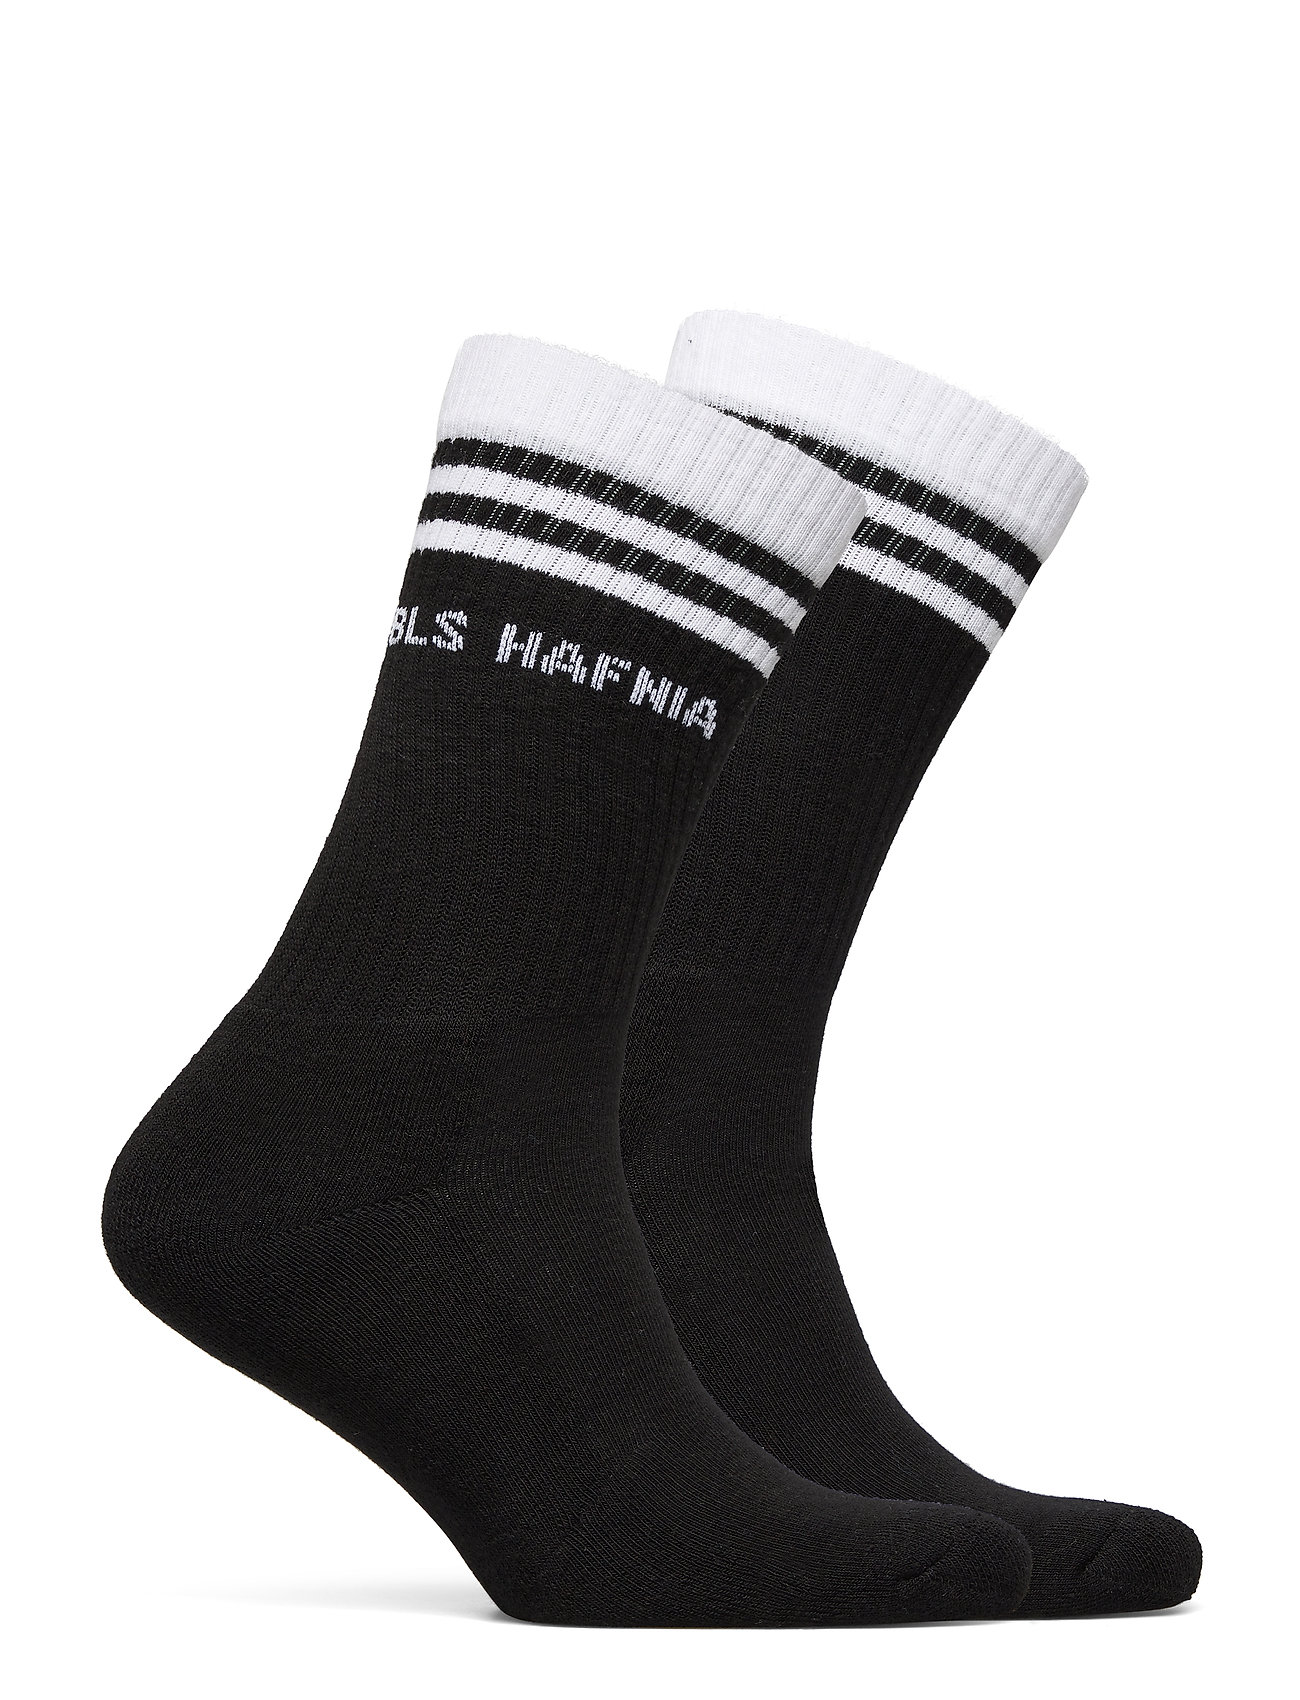 BLS Hafnia - BLS Socks - madalaimad hinnad - black - 1